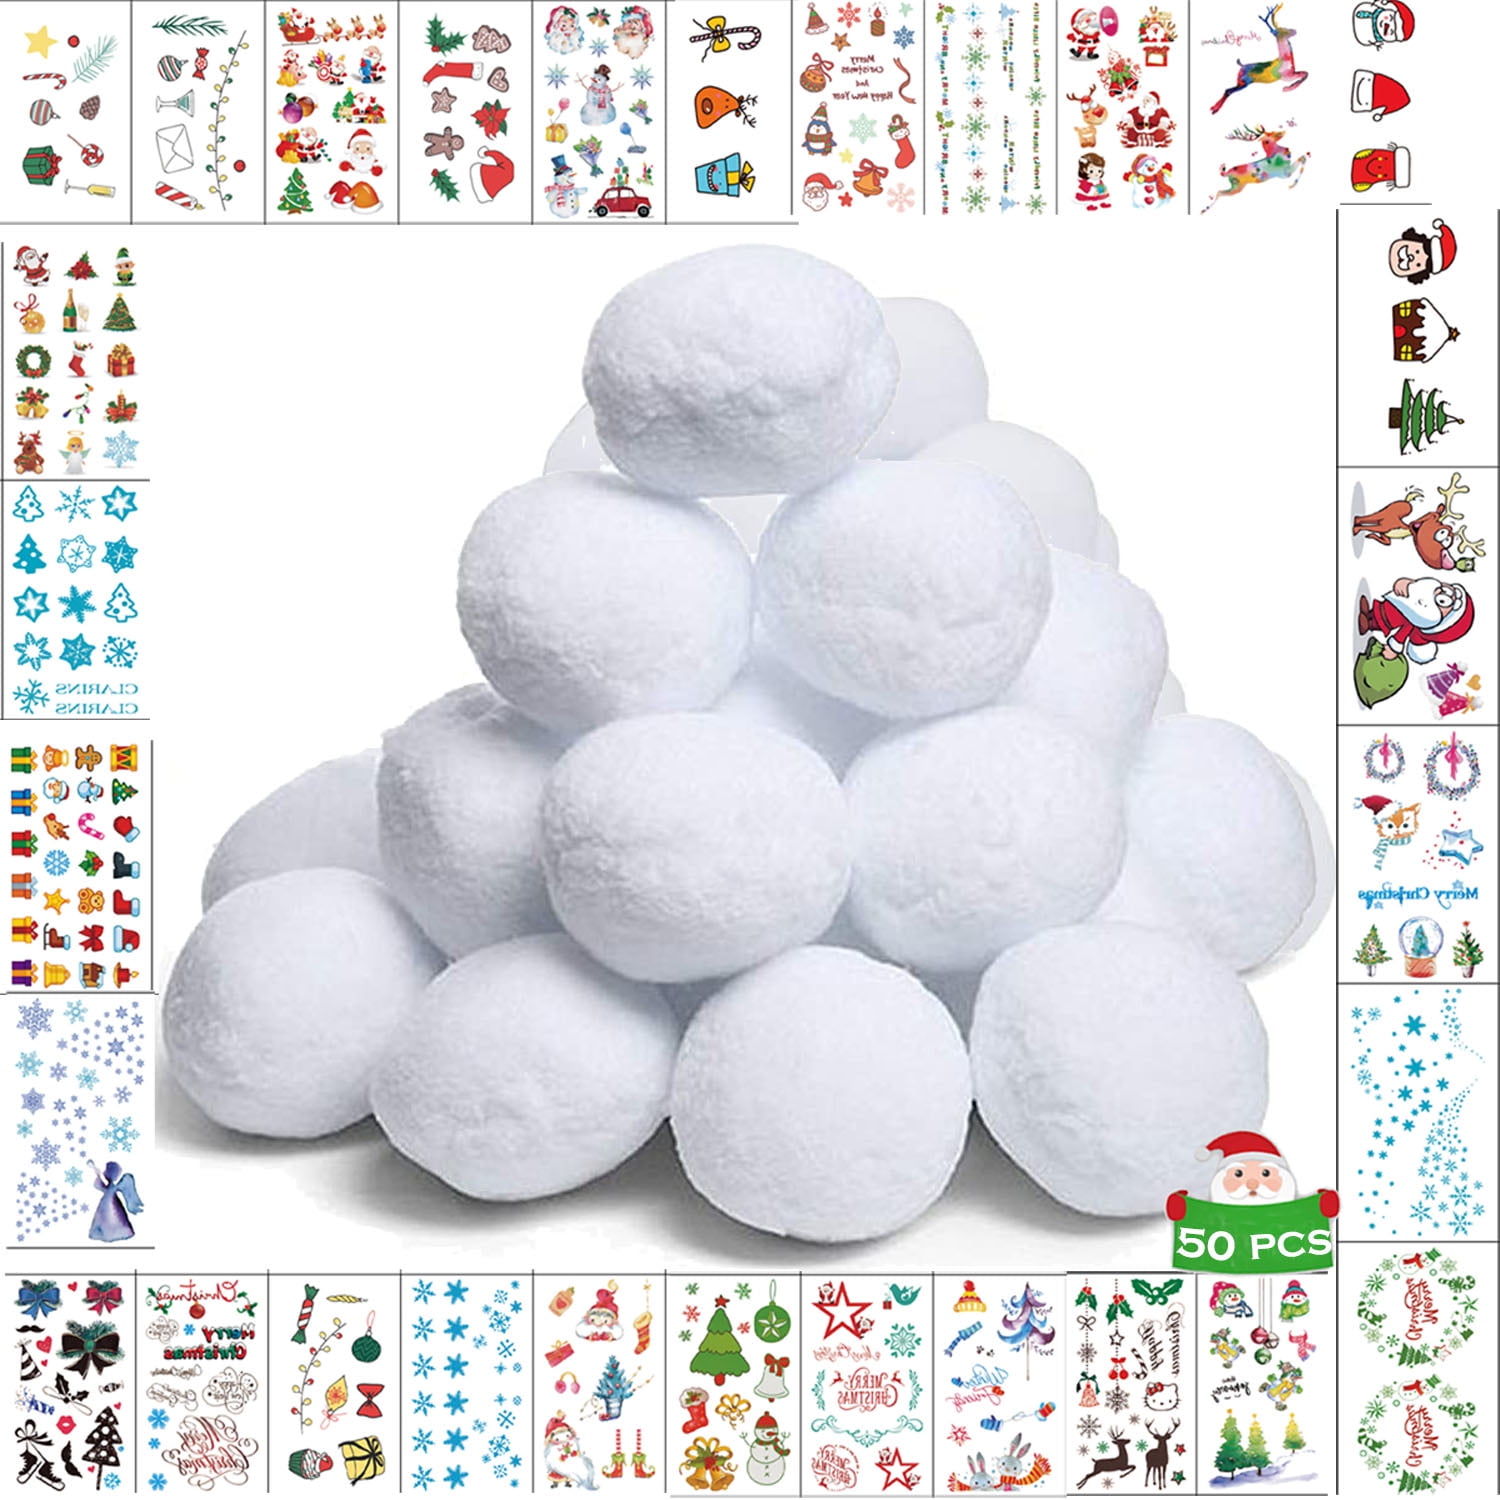 Indoor snowballs